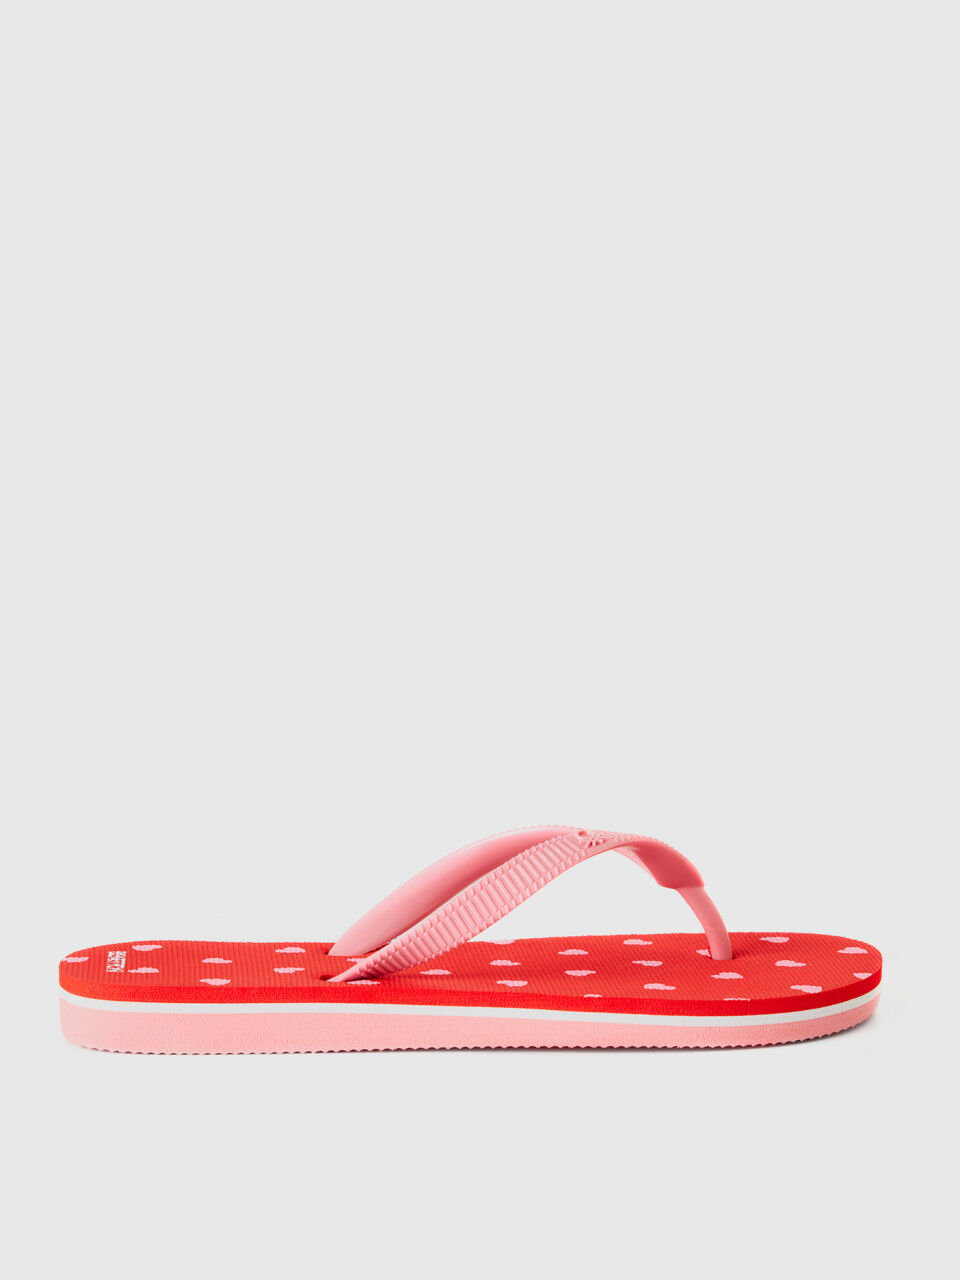 Patterned flip flops in lightweight rubber